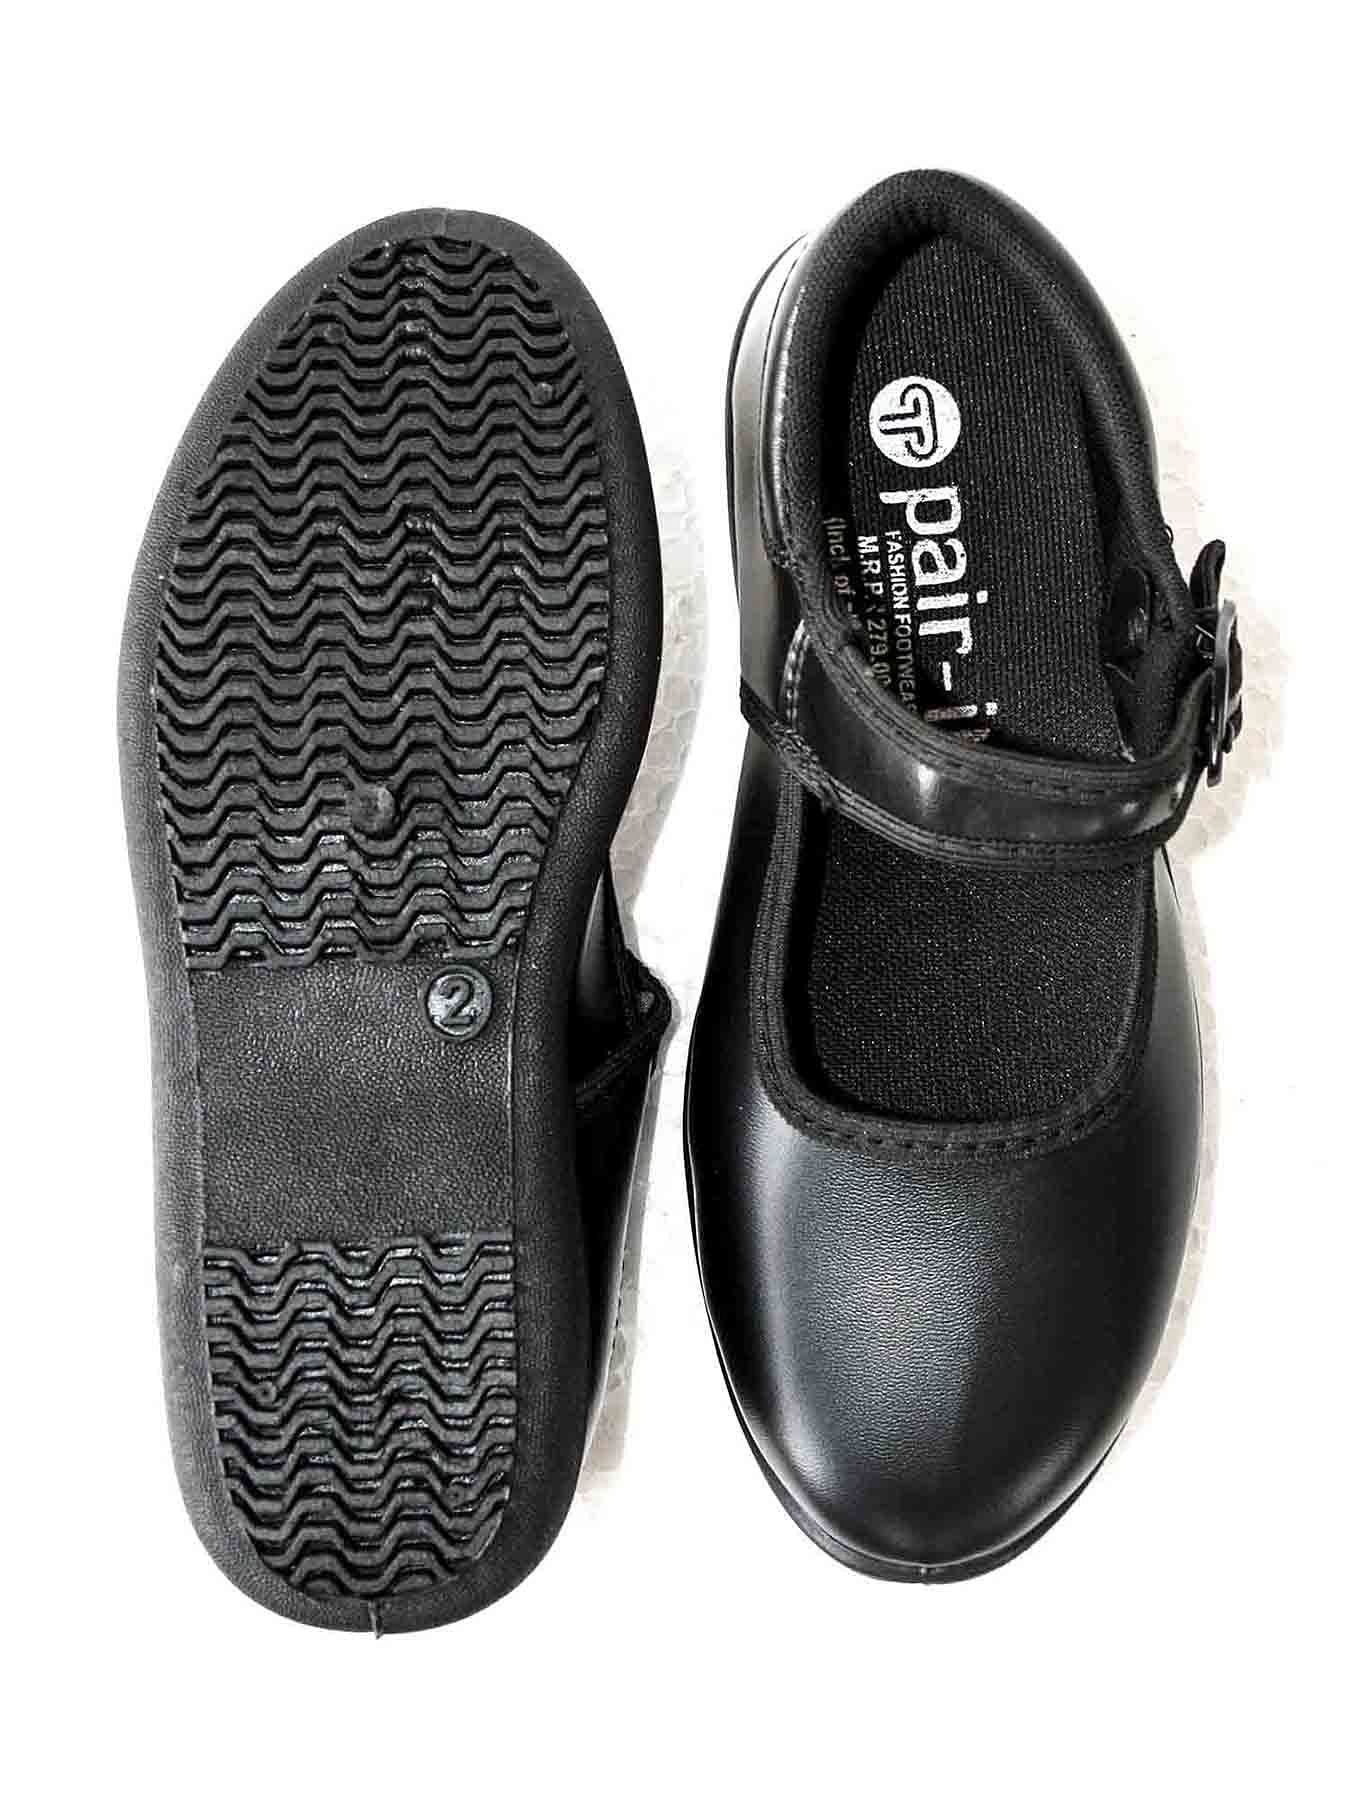 Pair-it Girls PVC School Shoe-Size 9,10 - Color Black